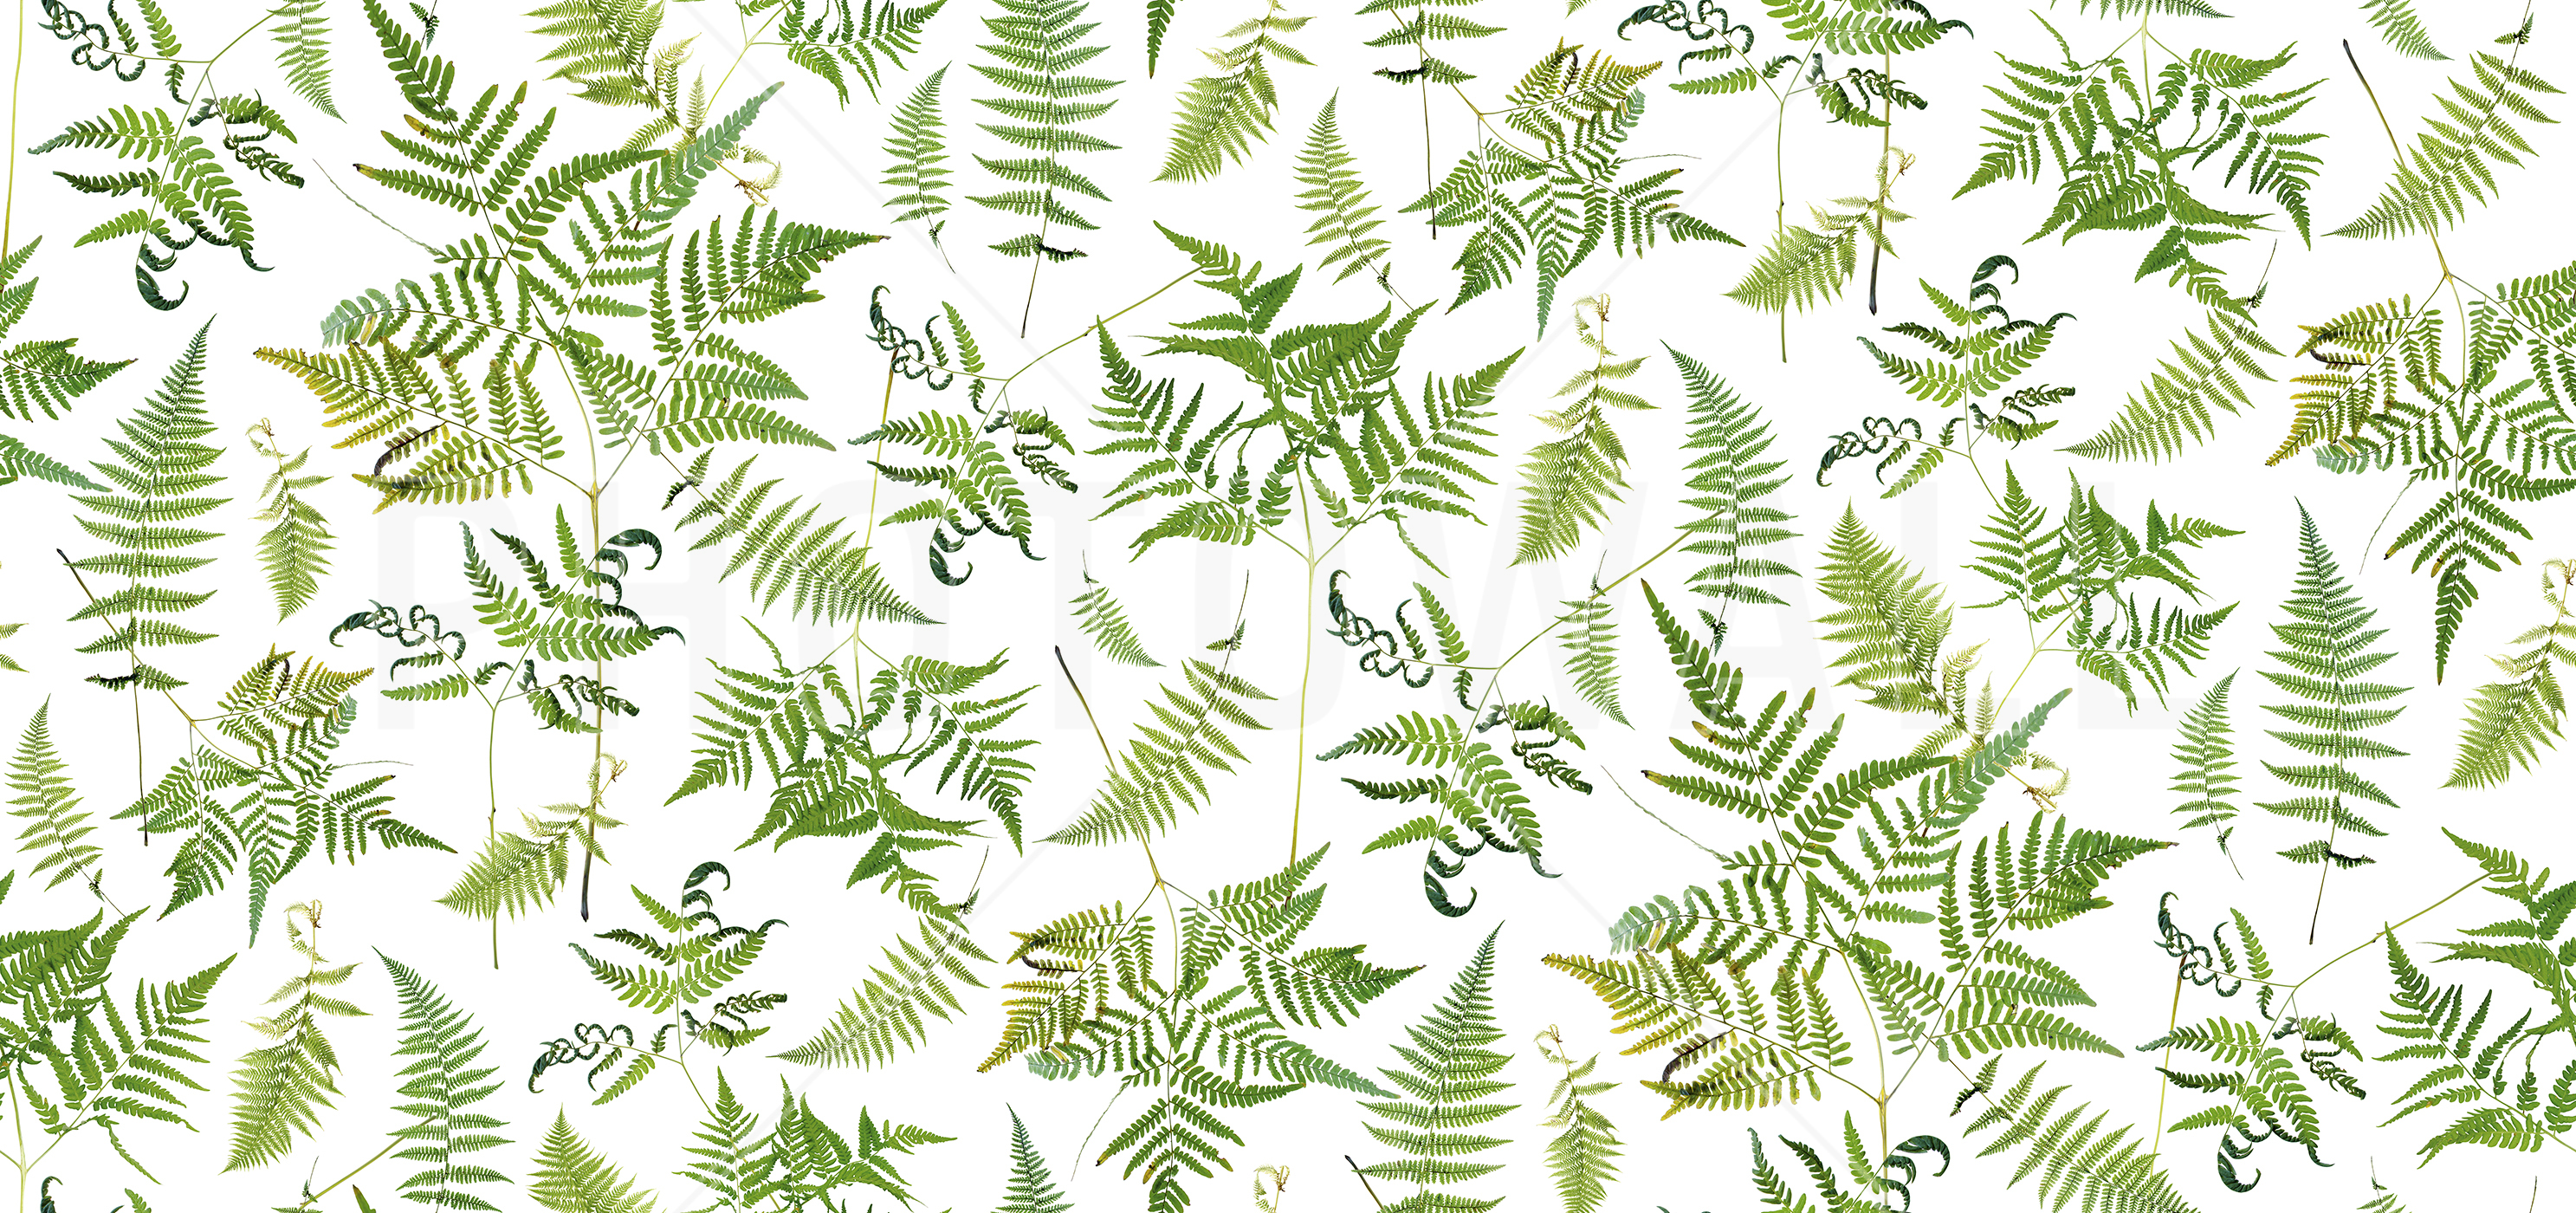 Fern Green - Wallpaper - Fern , HD Wallpaper & Backgrounds